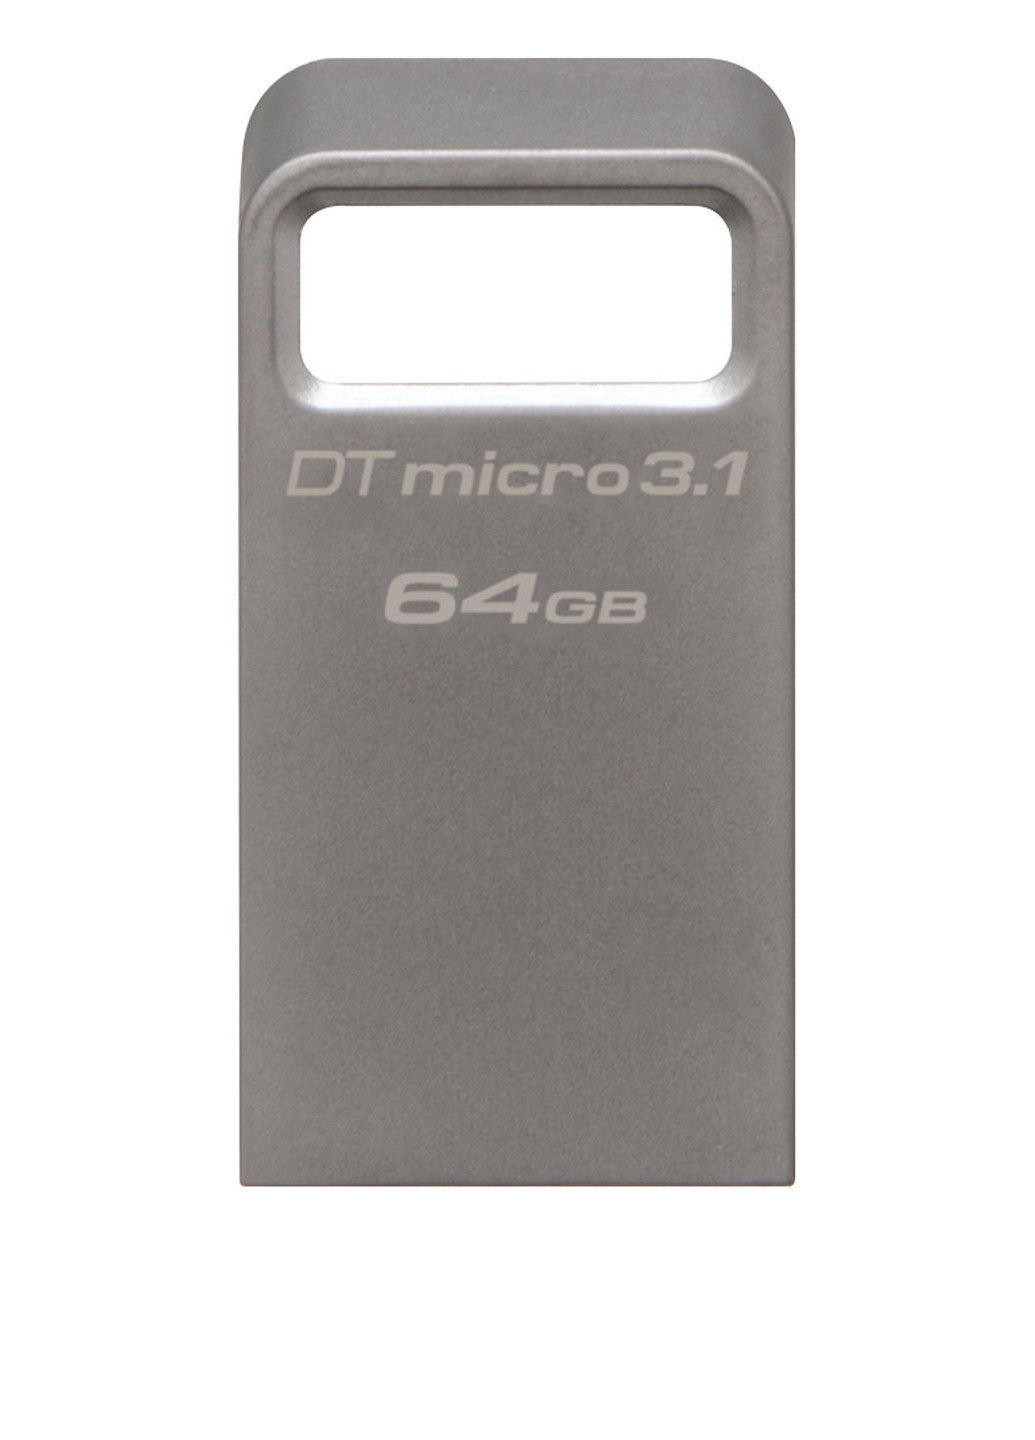 Флеш пам'ять USB DataTraveler Micro 3.1 64GB Metal Silver USB 3.1 (DTMC3 / 64GB) Kingston Флеш память USB Kingston DataTraveler Micro 3.1 64GB Metal Silver USB 3.1 (DTMC3/64GB) сріблясті